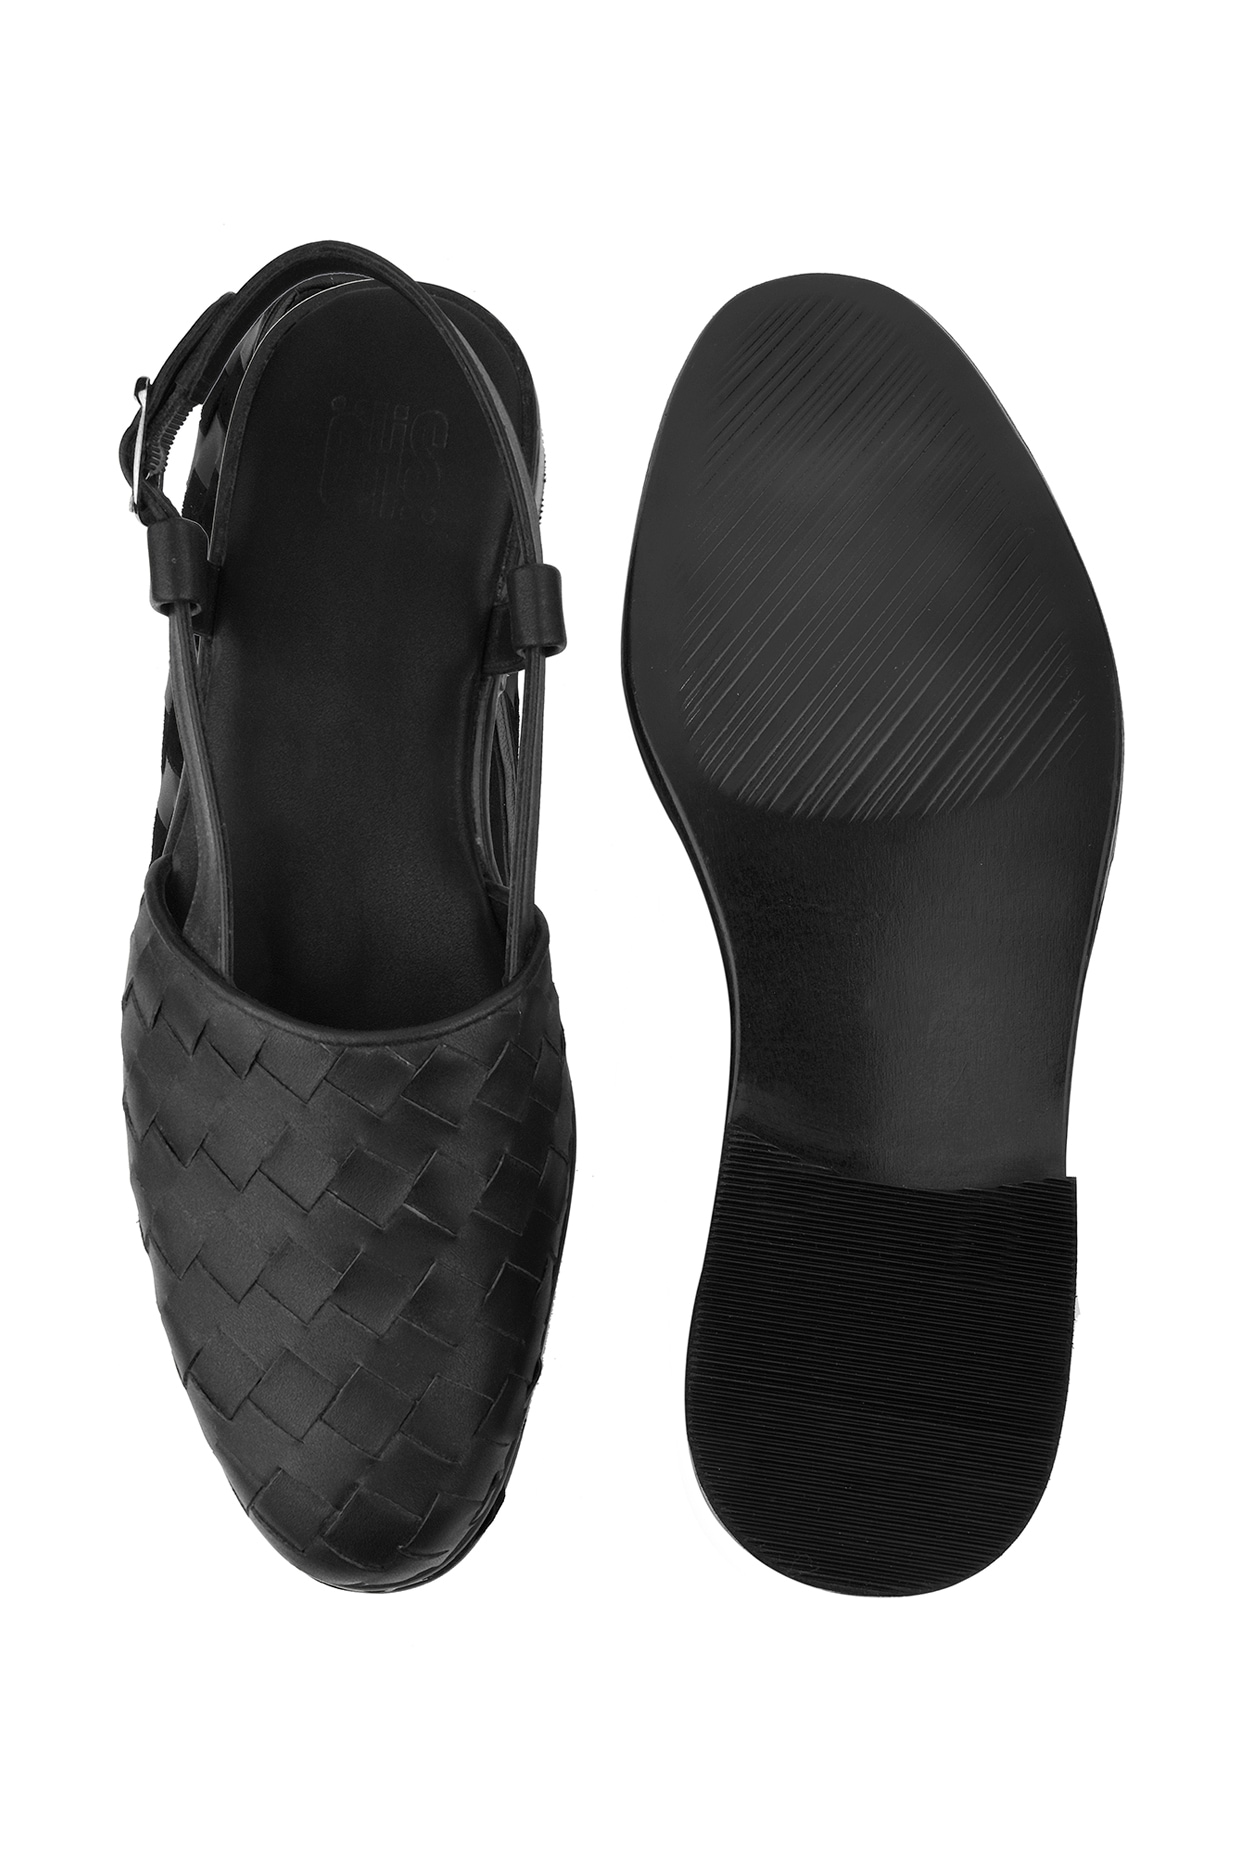 Cartago Men Blue, Beige Sandals - Buy Cartago Men Blue, Beige Sandals  Online at Best Price - Shop Online for Footwears in India | Flipkart.com